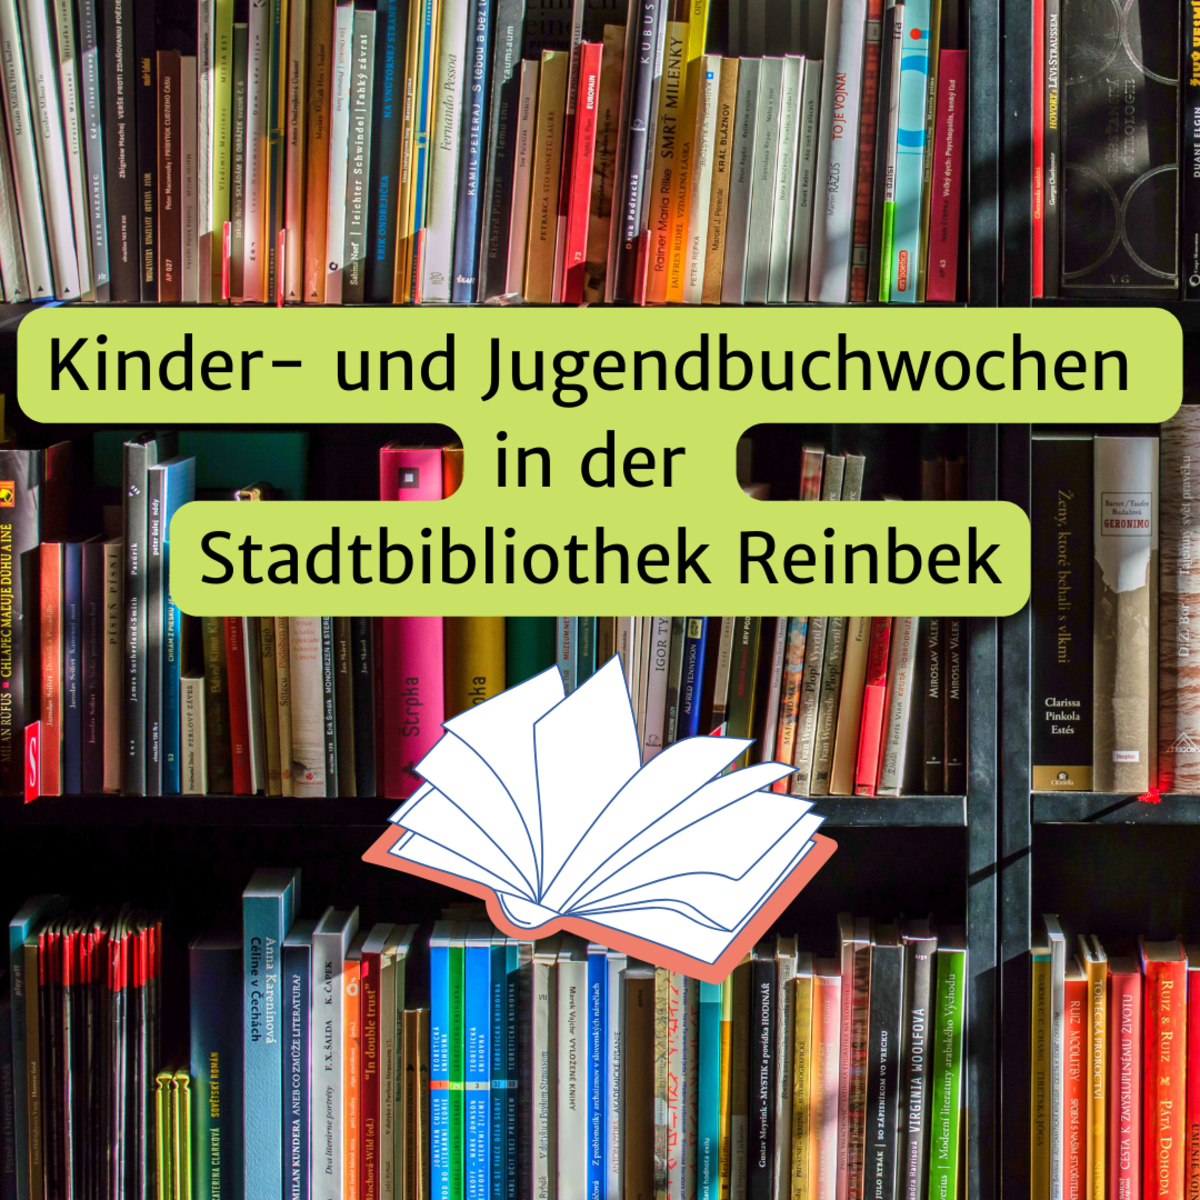 Bücherregal - Kinder- und Jugendbuchwochen in der Stadtbibliothek Reinbek